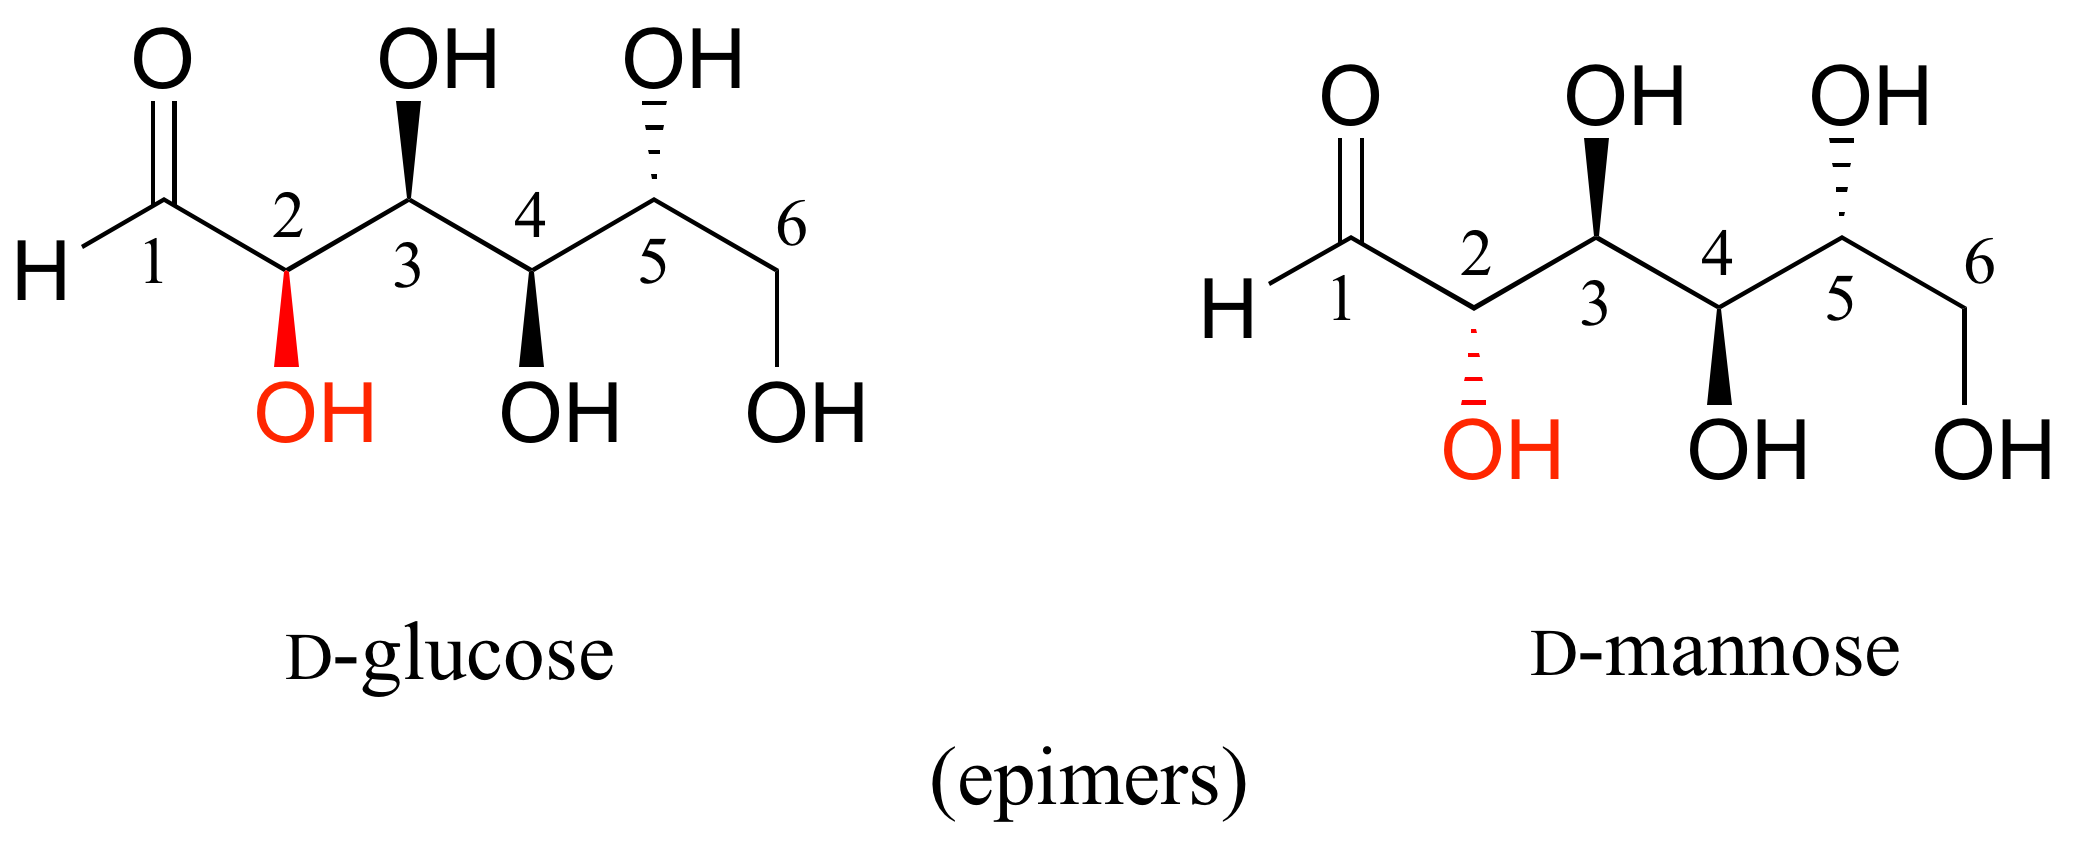 D-glucosa comparada con D-manosa. La D-glucosa tiene un grupo hidroxi en el carbono 2 en una cuña y la D-manosa tiene un grupo hidroxi en el carbono 2 en los guiones. Son epímeros.